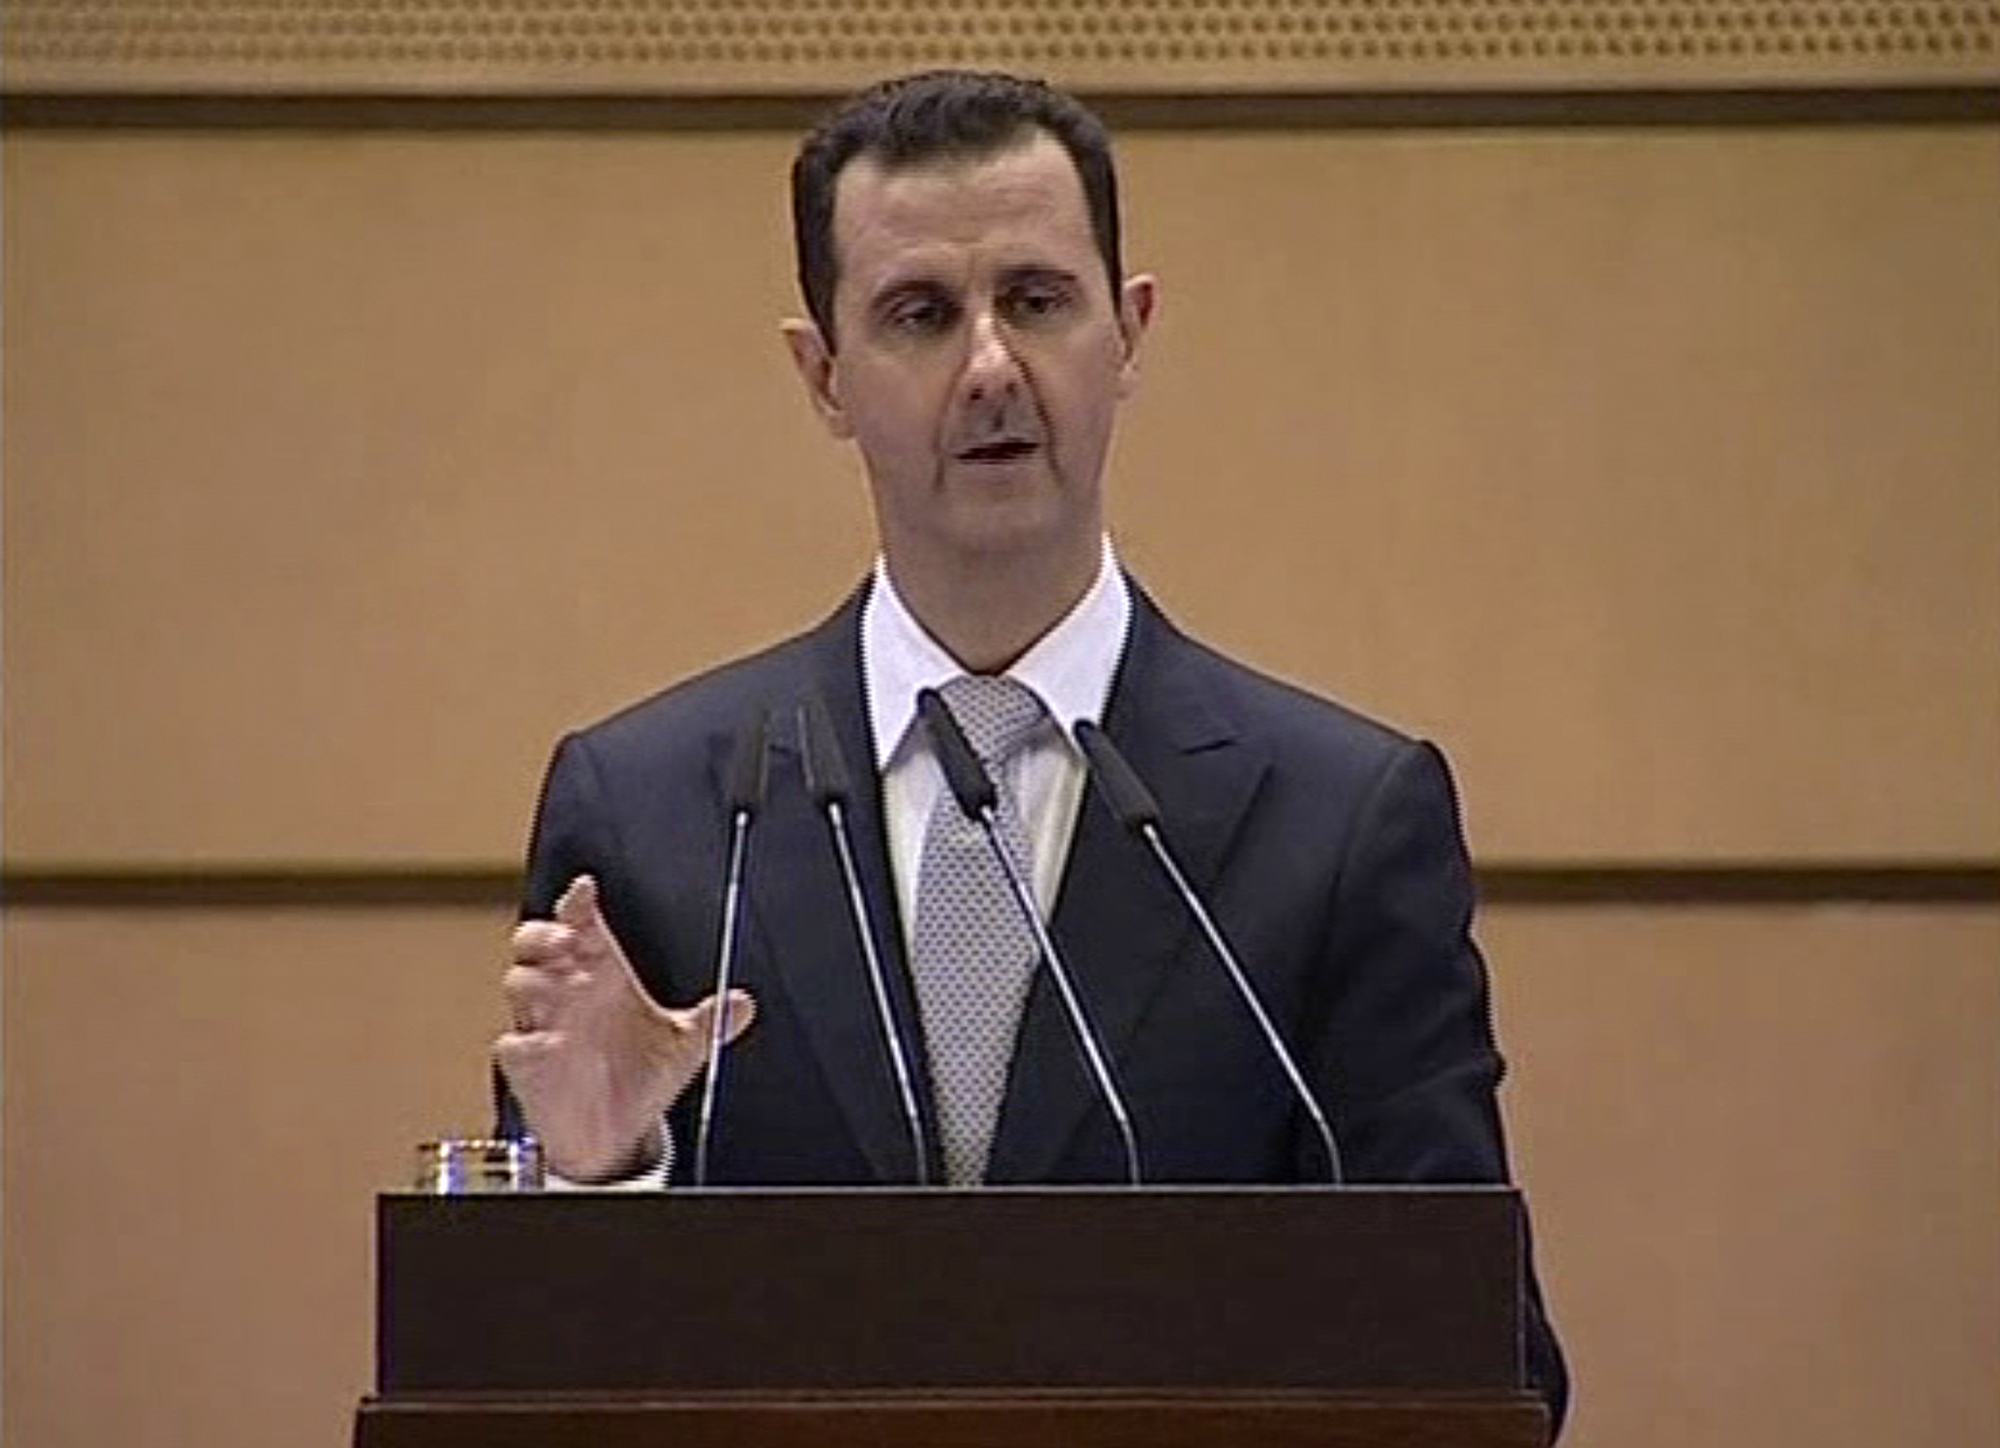 Den 10 januari 2012 höll Assad ett tal där han anklagade upproren för att vara andra länders påhitt och hävdade att "segern var nära"